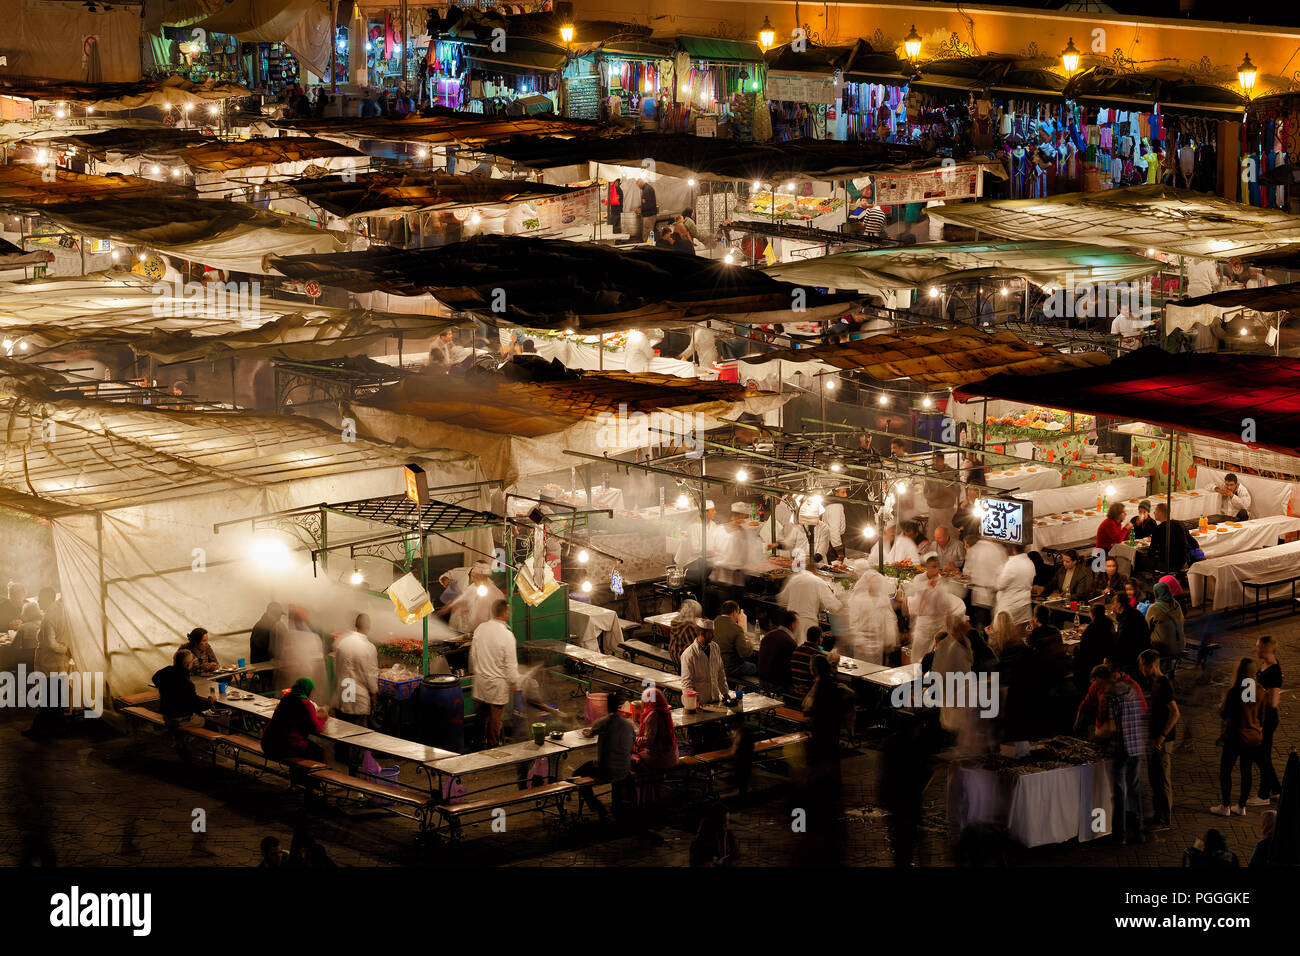 Maroc-DEC 24, 2012:Le marché nocturne de la célèbre médina de Marrakech. Nuit à la place se remplit de cuisines et restaurants en plein air, présentée ici Banque D'Images